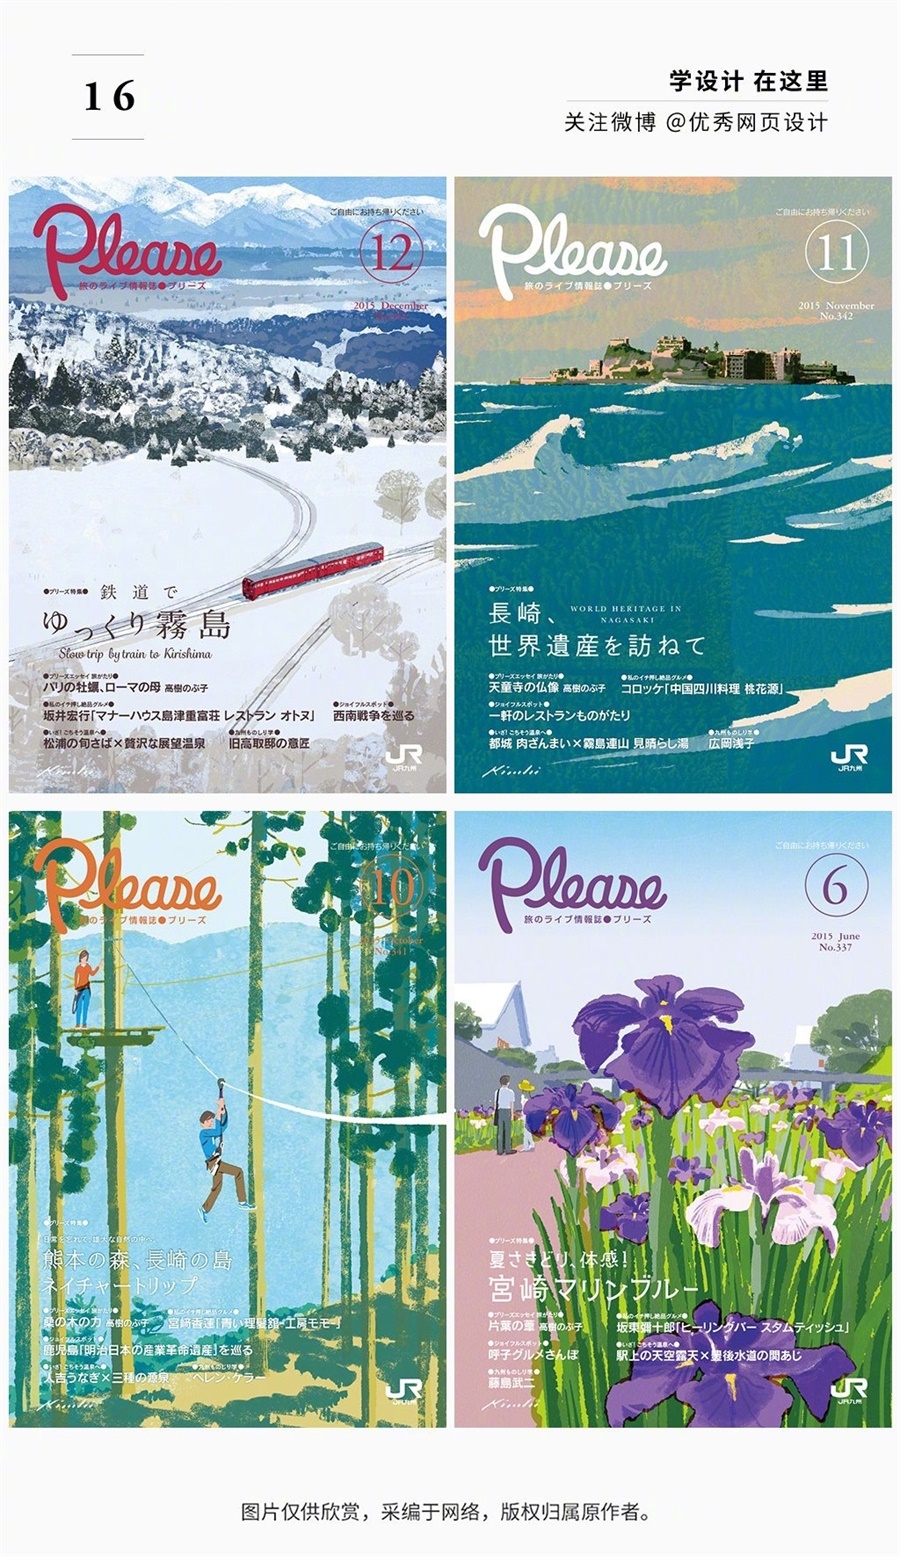 72张日本JR铁路宣传册《Please》封面